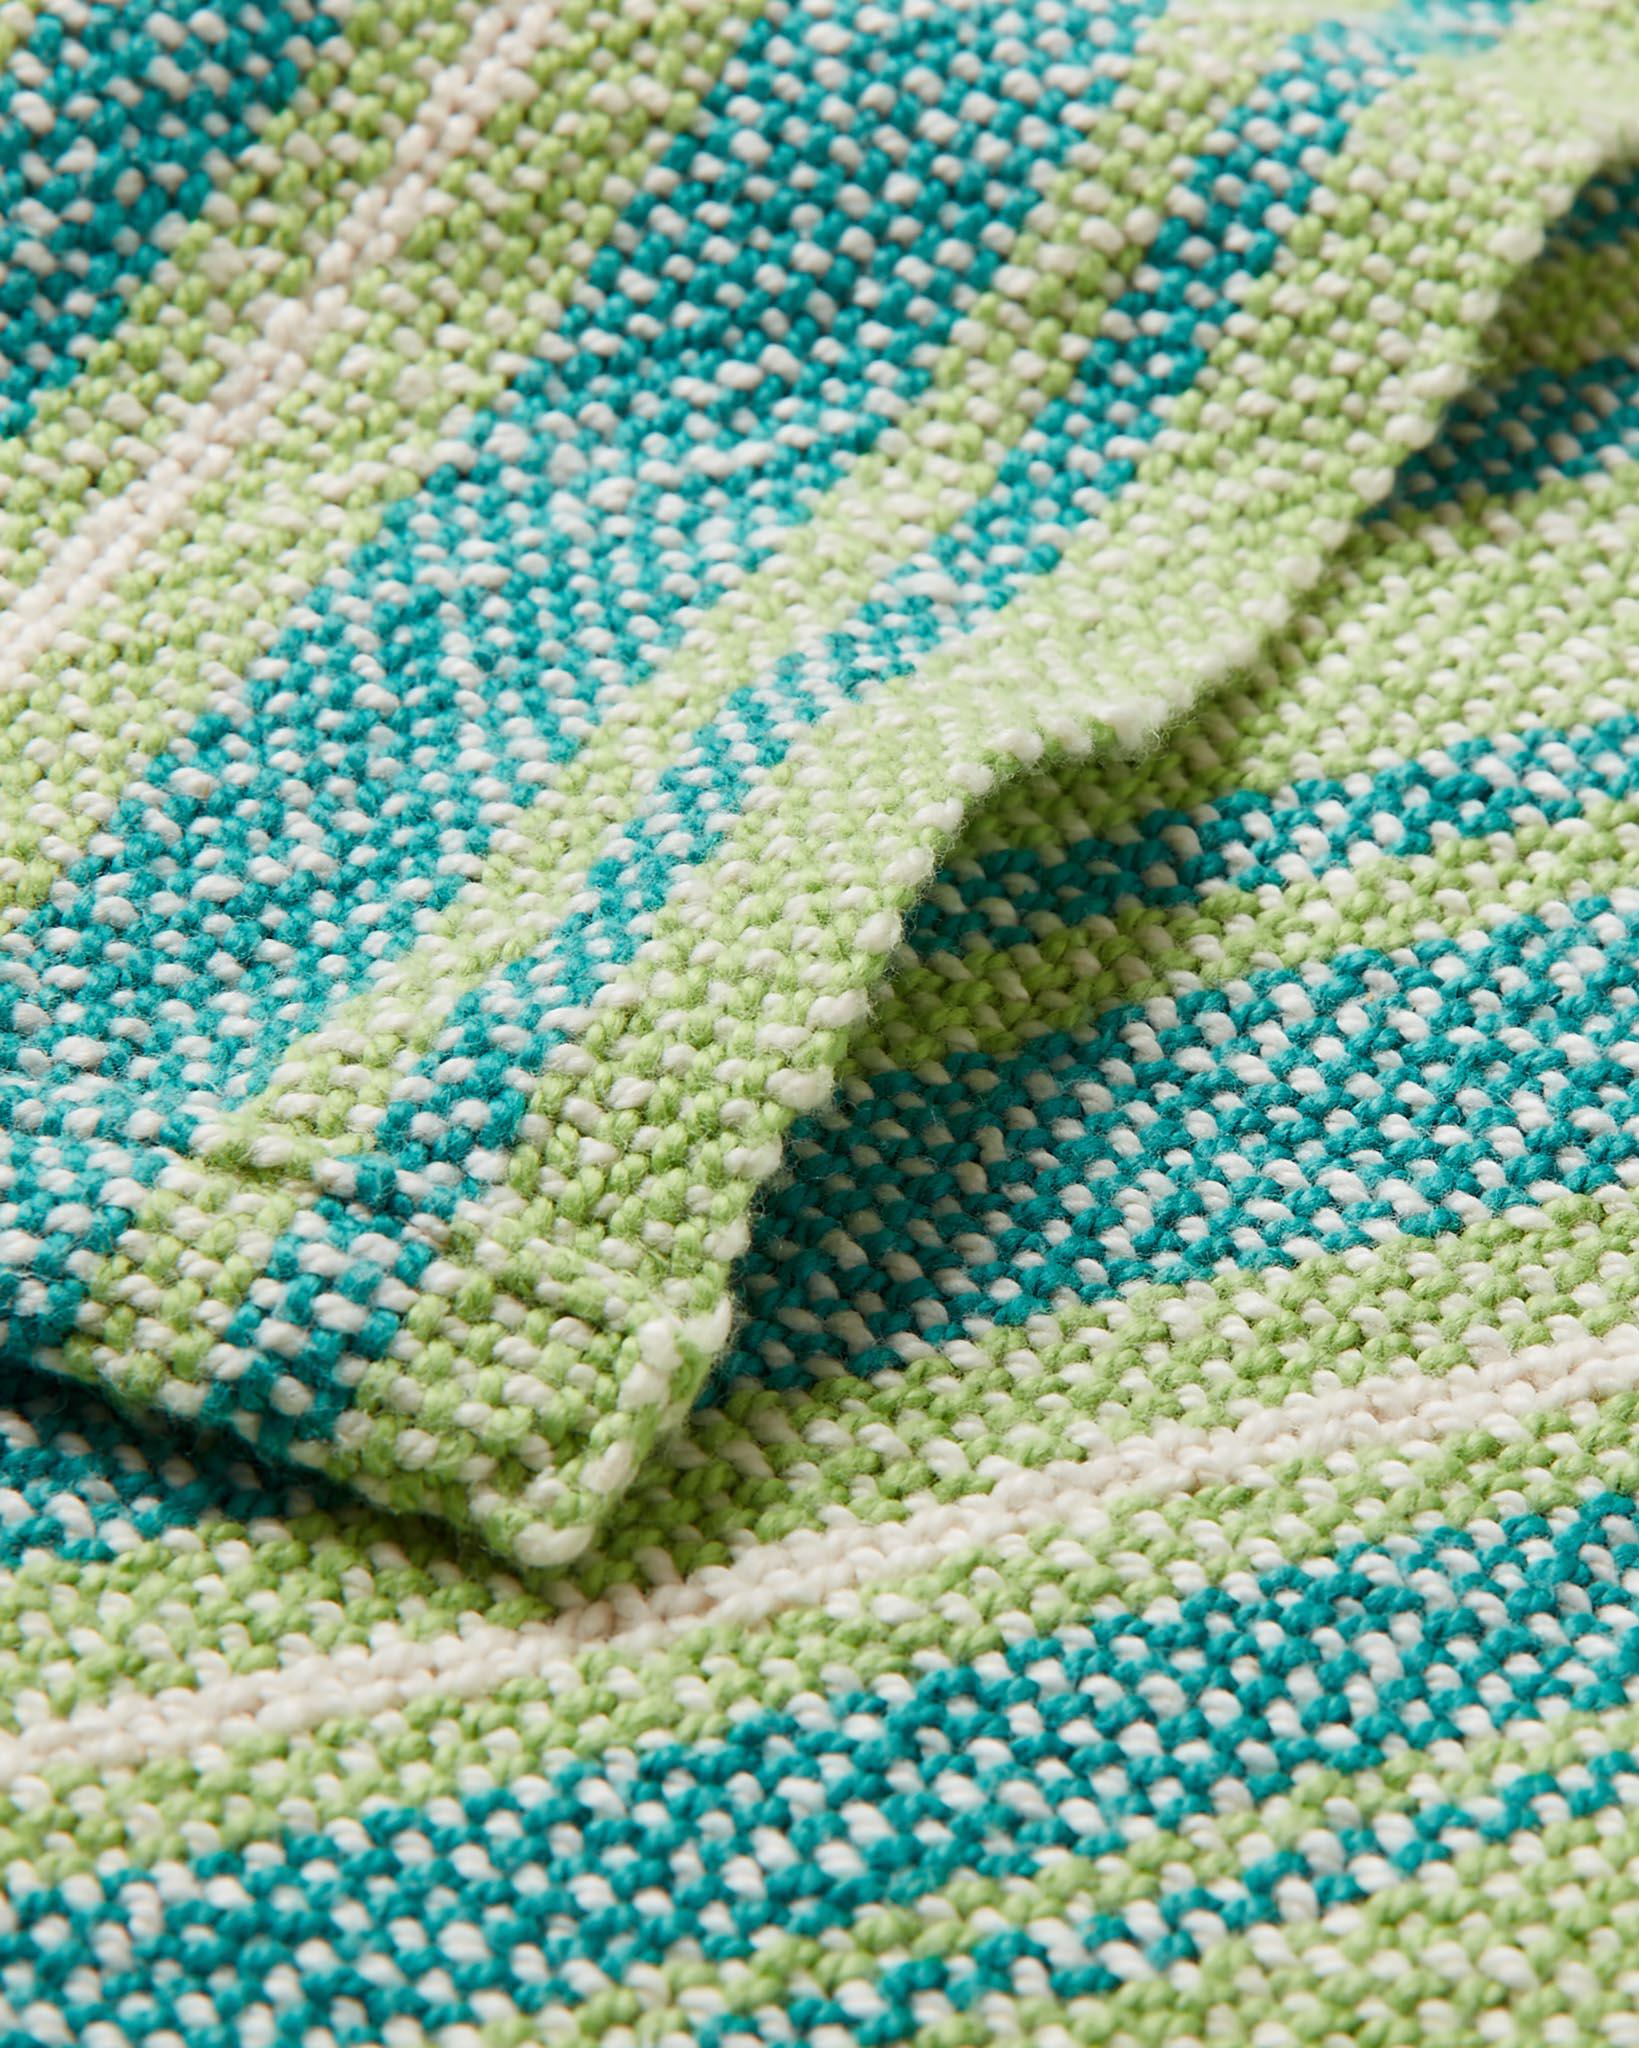 United Cotton Crochet Baby Blanket Kit